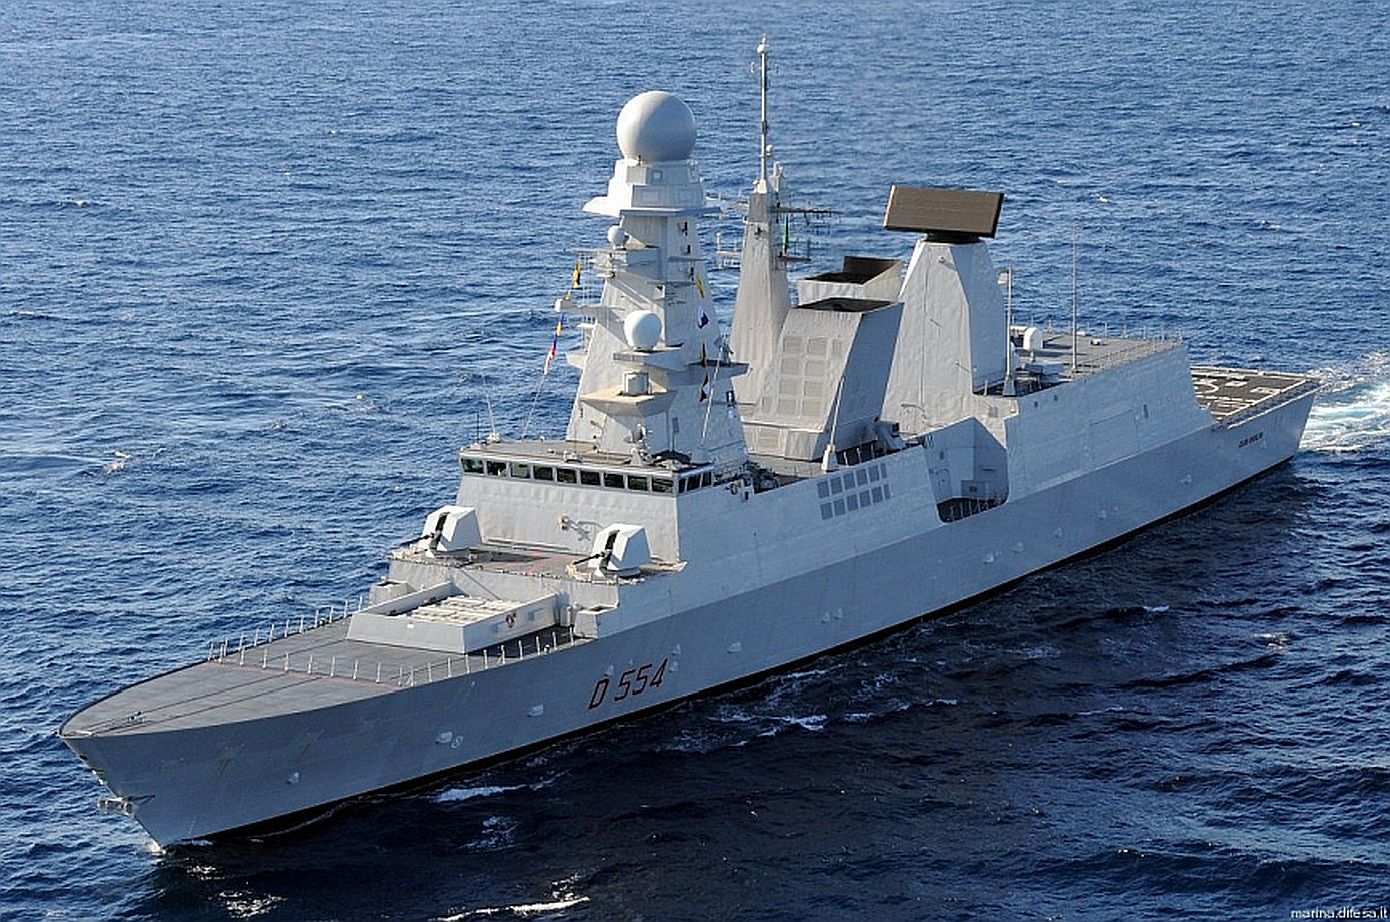 Ιταλικό πολεμικό πλοίο κατέρριψε drone στην Ερυθρά Θάλασσα